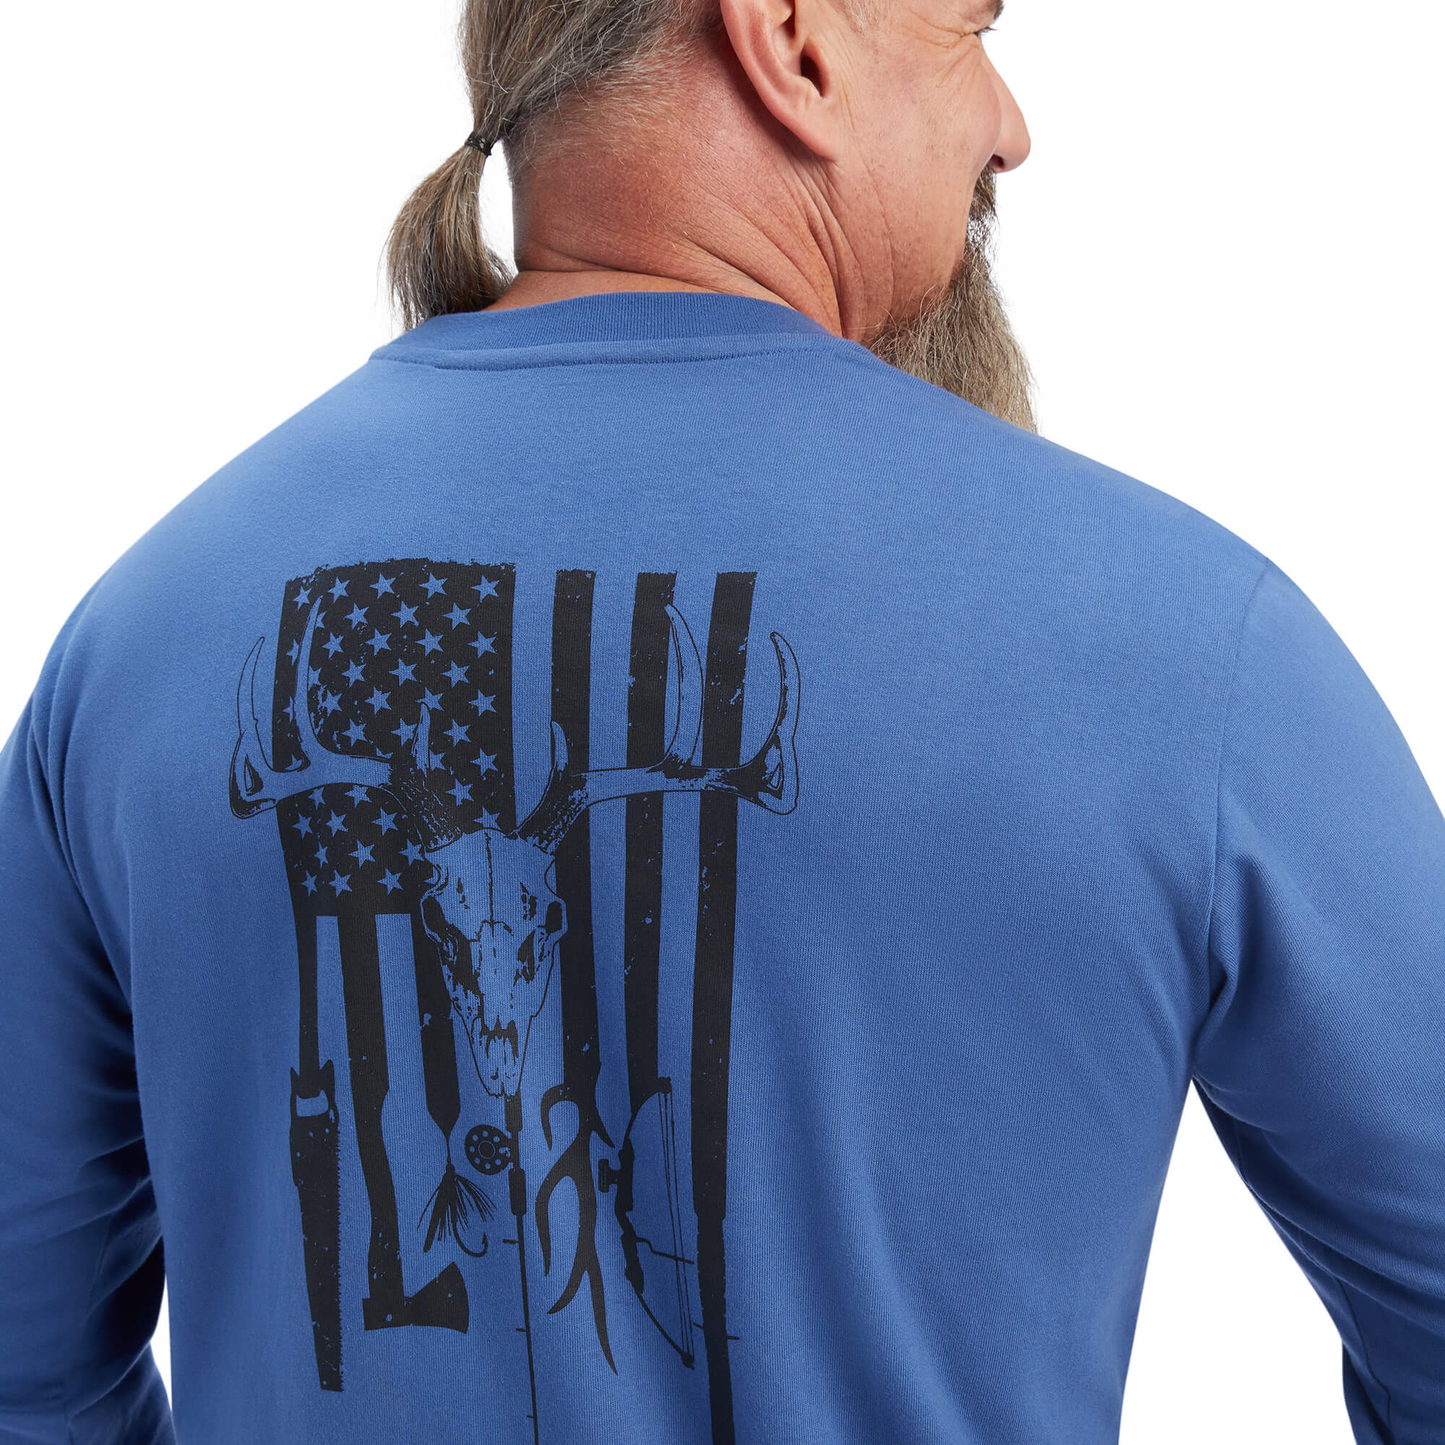 Ariat® Men's Rebar Outdoor Graphic Navy T-Shirt 10041419